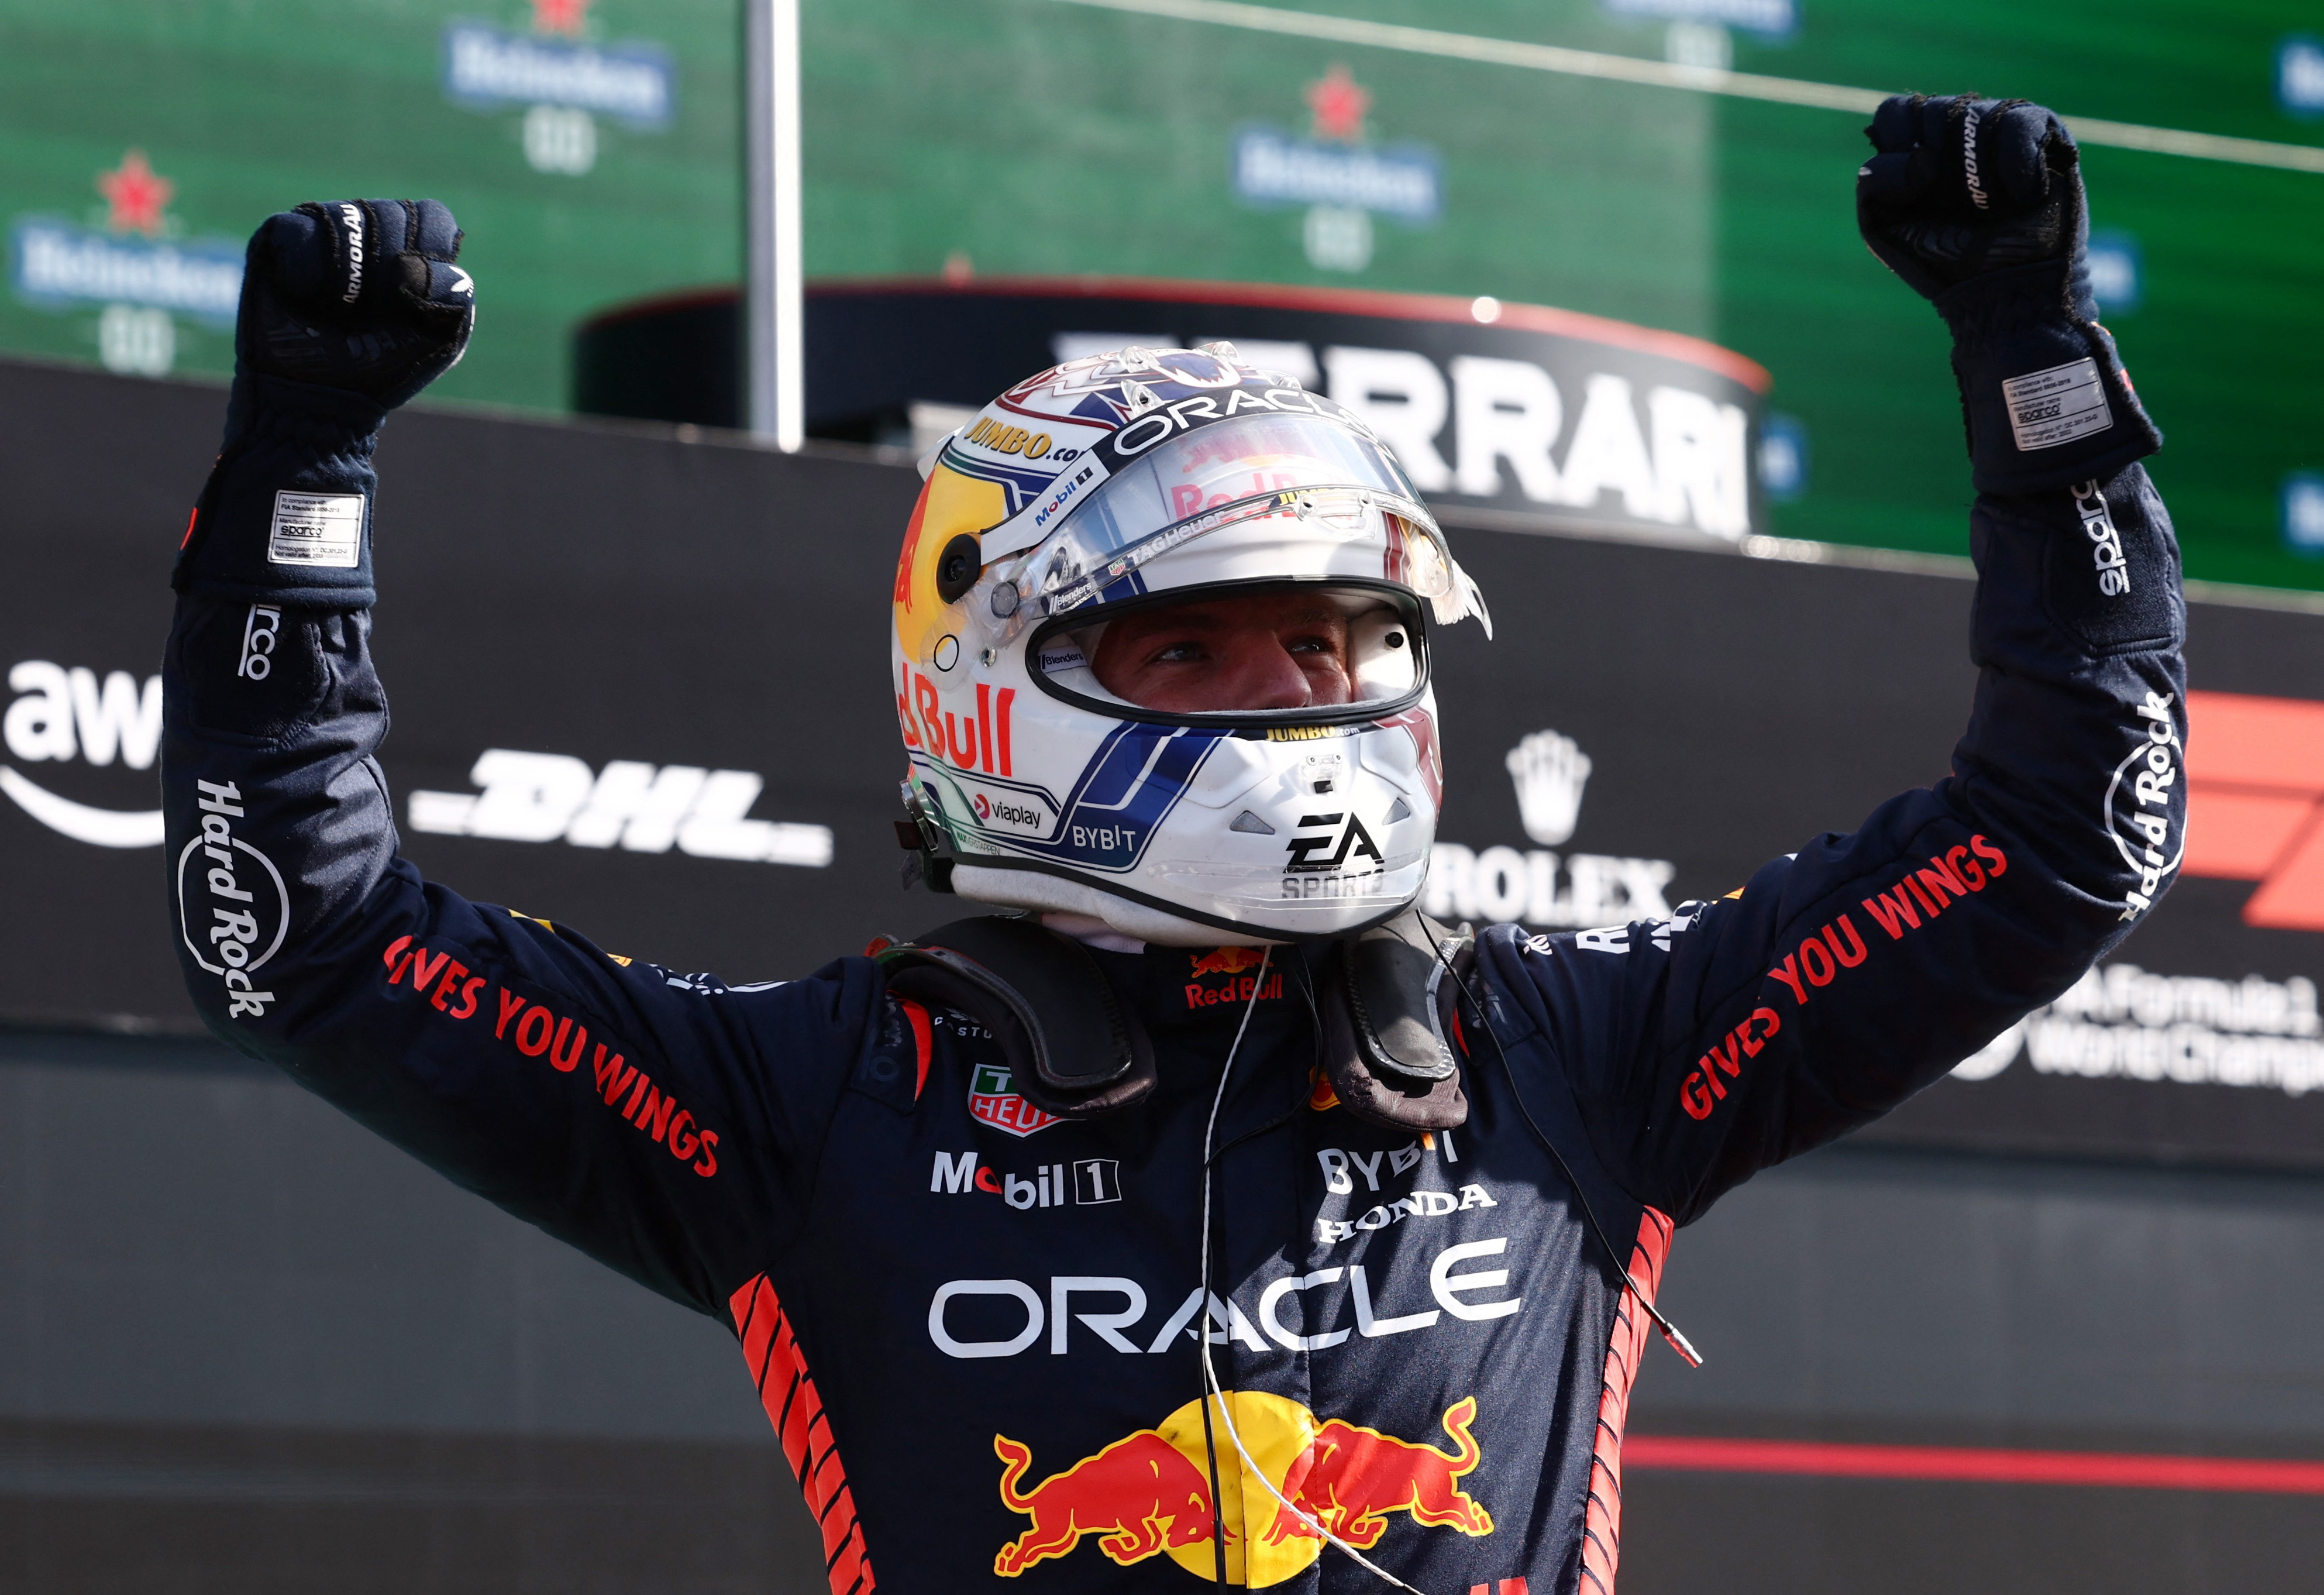 F1 LIVE Dutch Grand Prix qualifying latest - Live